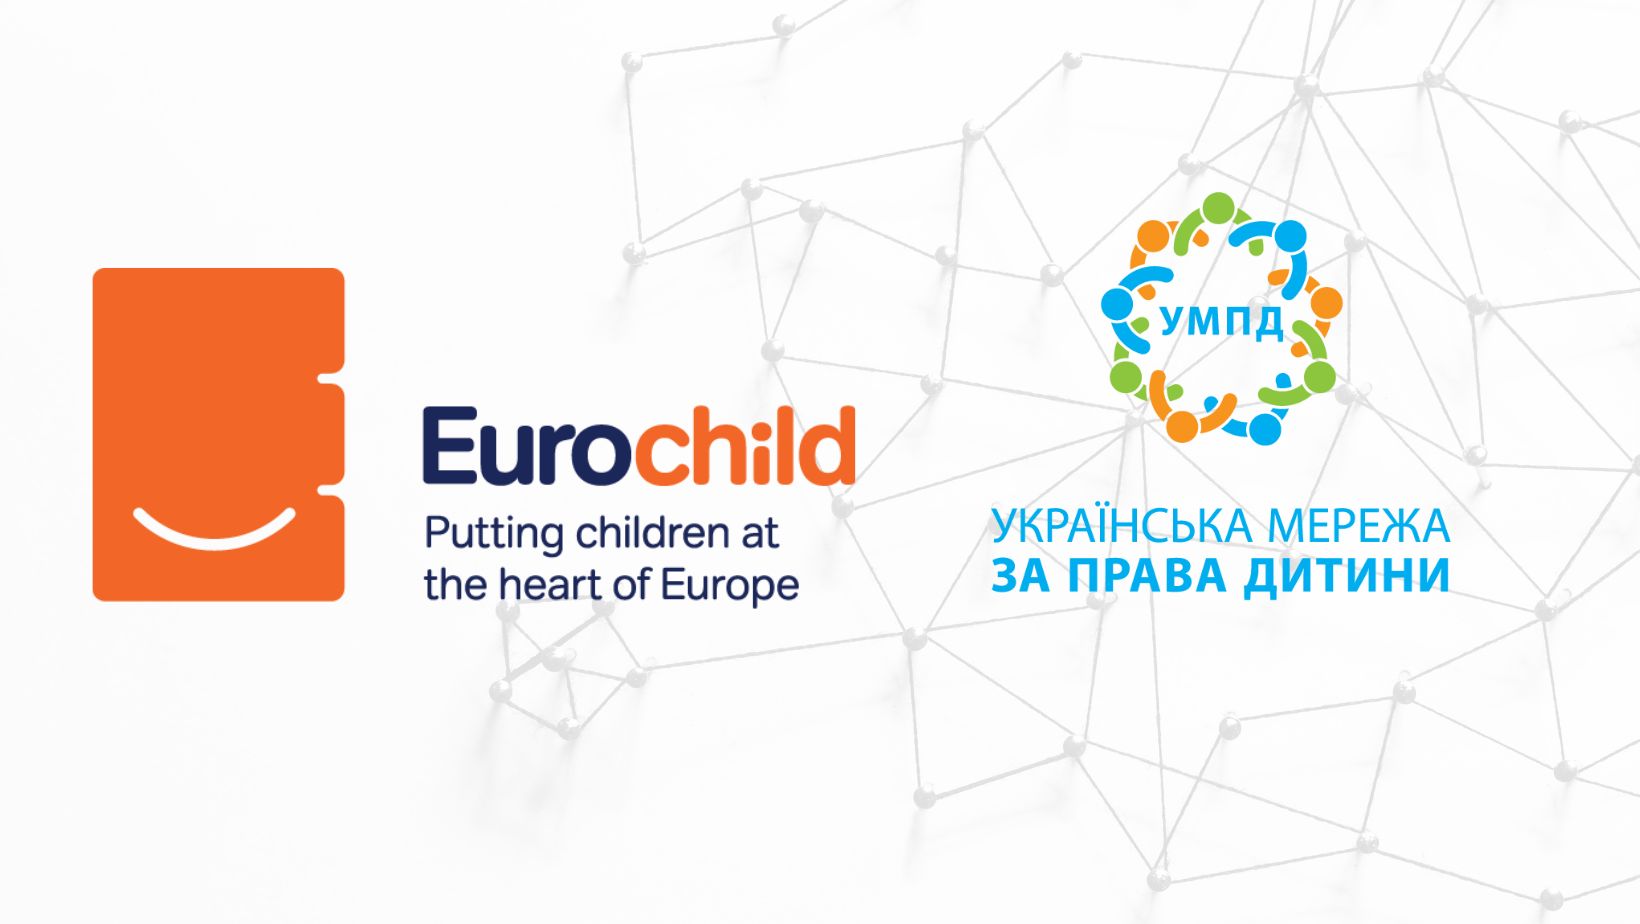 ГС «Українська мережа за права дитини» стала частиною мережі Eurochild